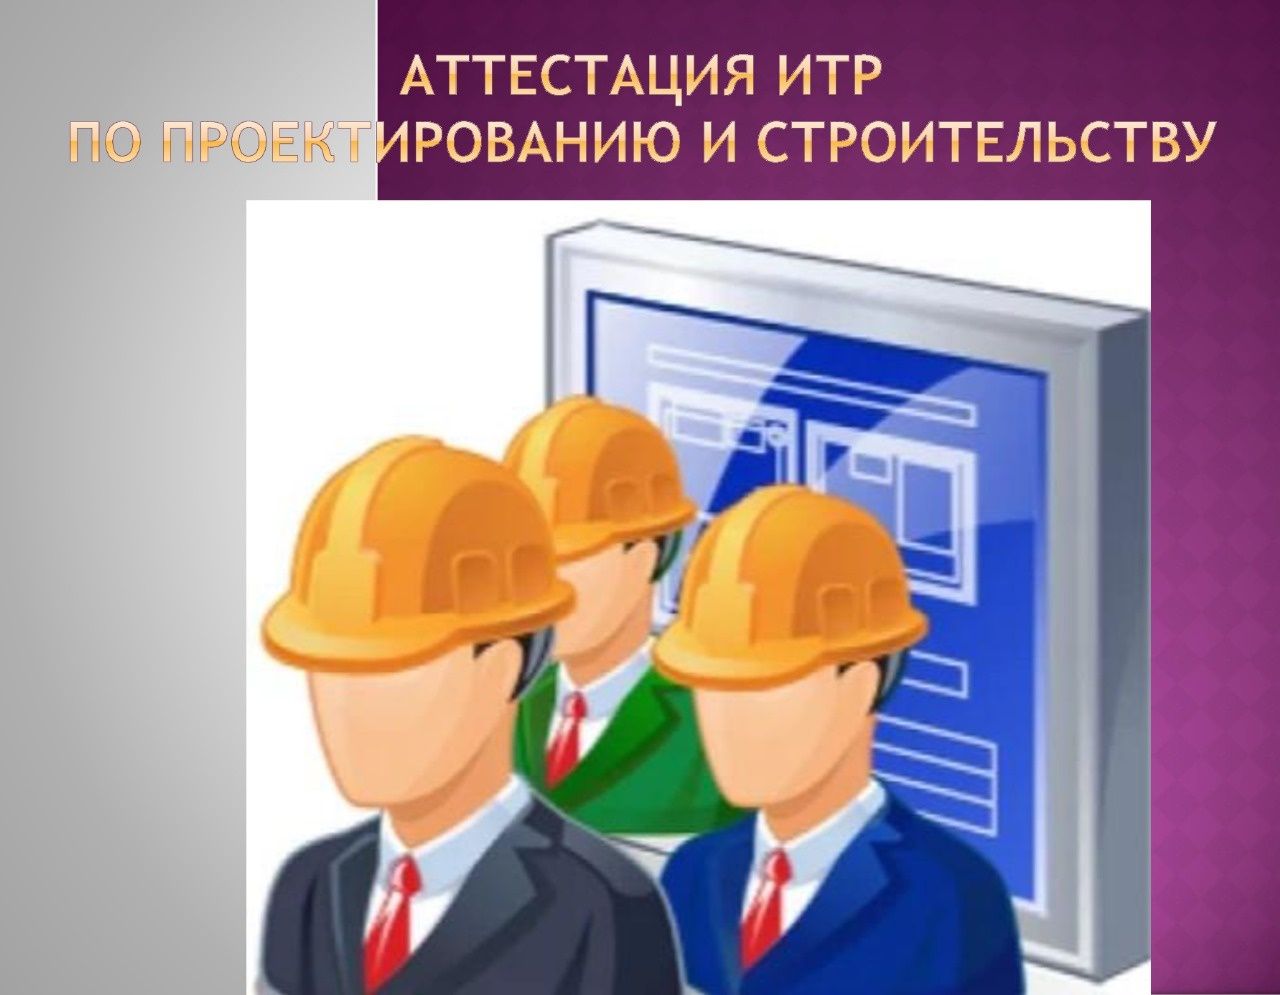 Аттестация инженеров ИТР в Кызылорде